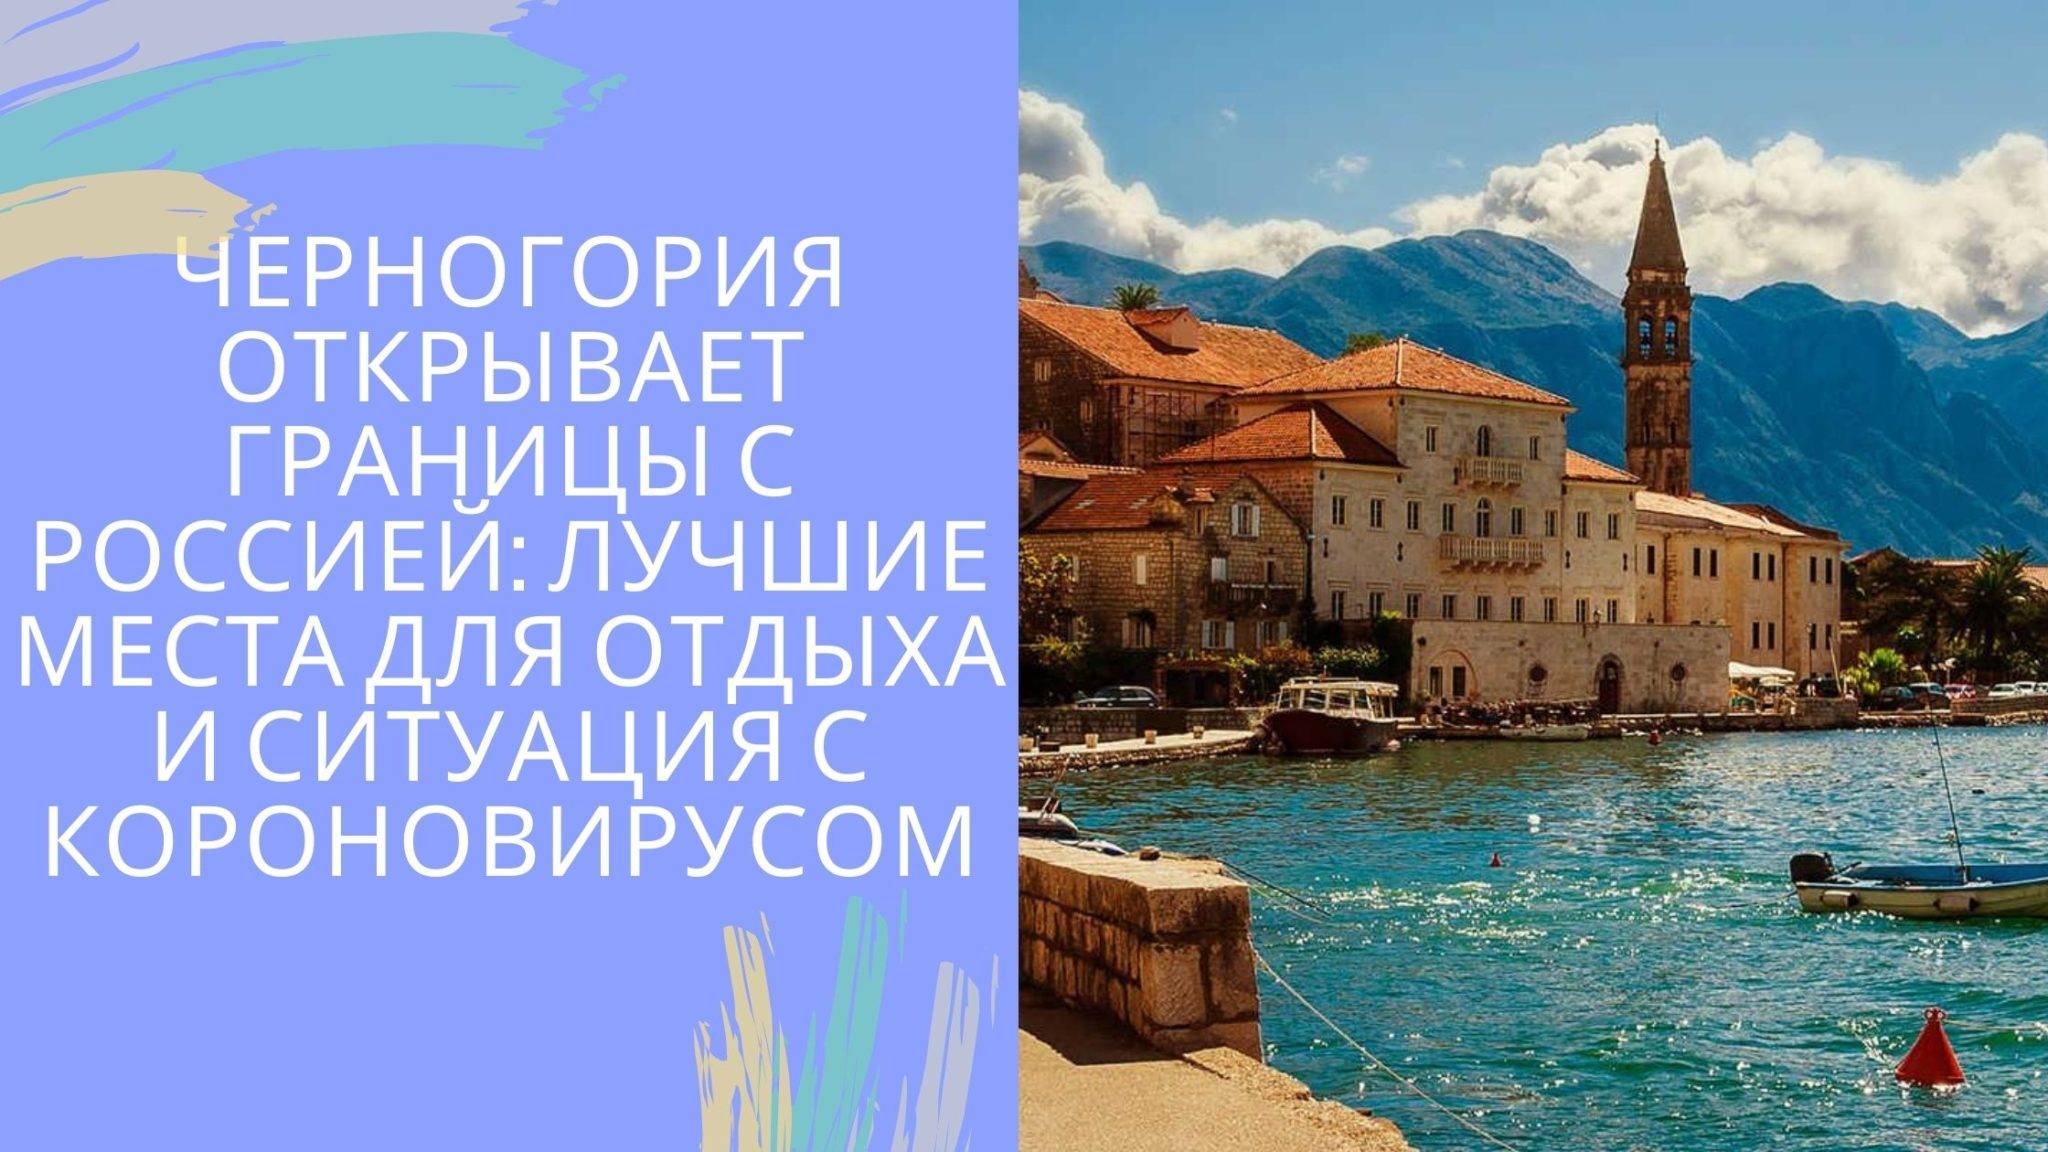 Жизни в черногории  2021  году: плюсы и минусы